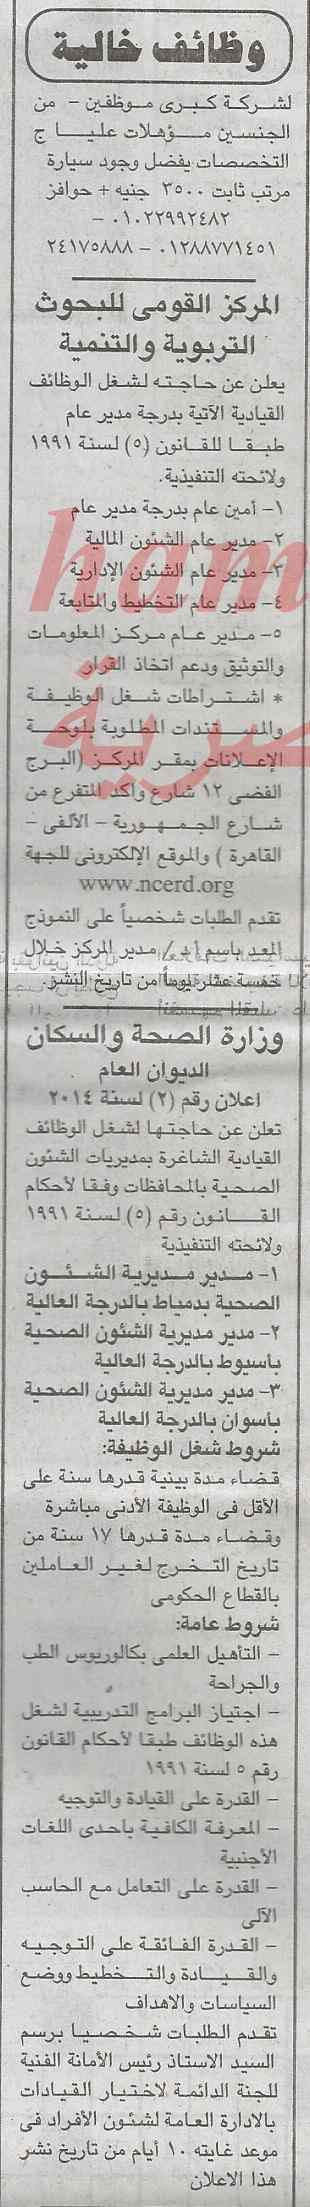 وظائف جريدة الجمهورية اليوم الجمعة 21-2-2014 , وظائف خالية في مصر اليوم 21 فبراير 2014